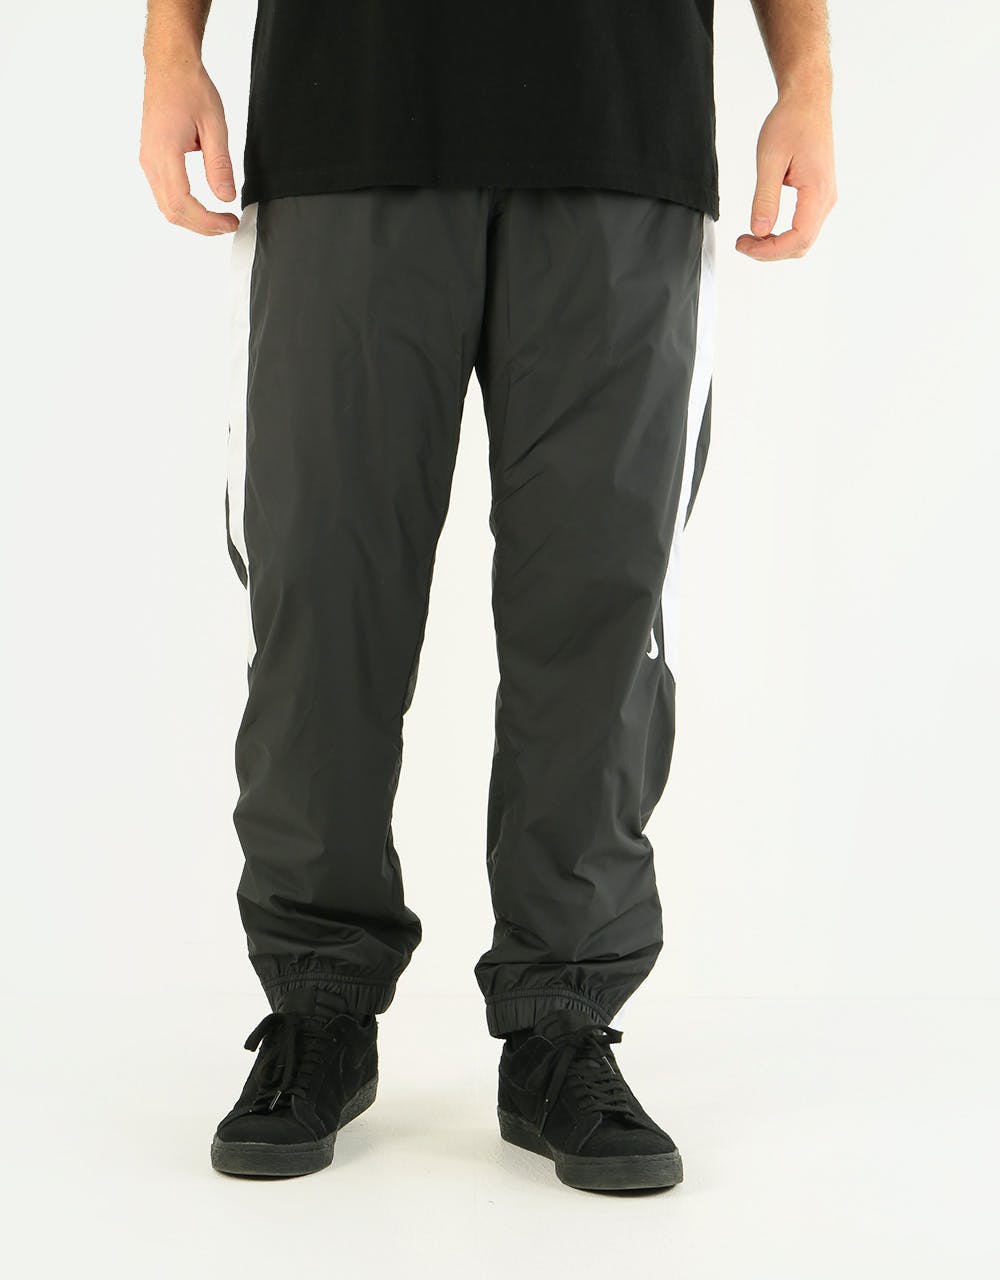 Nike SB Shield Swoosh Track Pant - Black/White/White